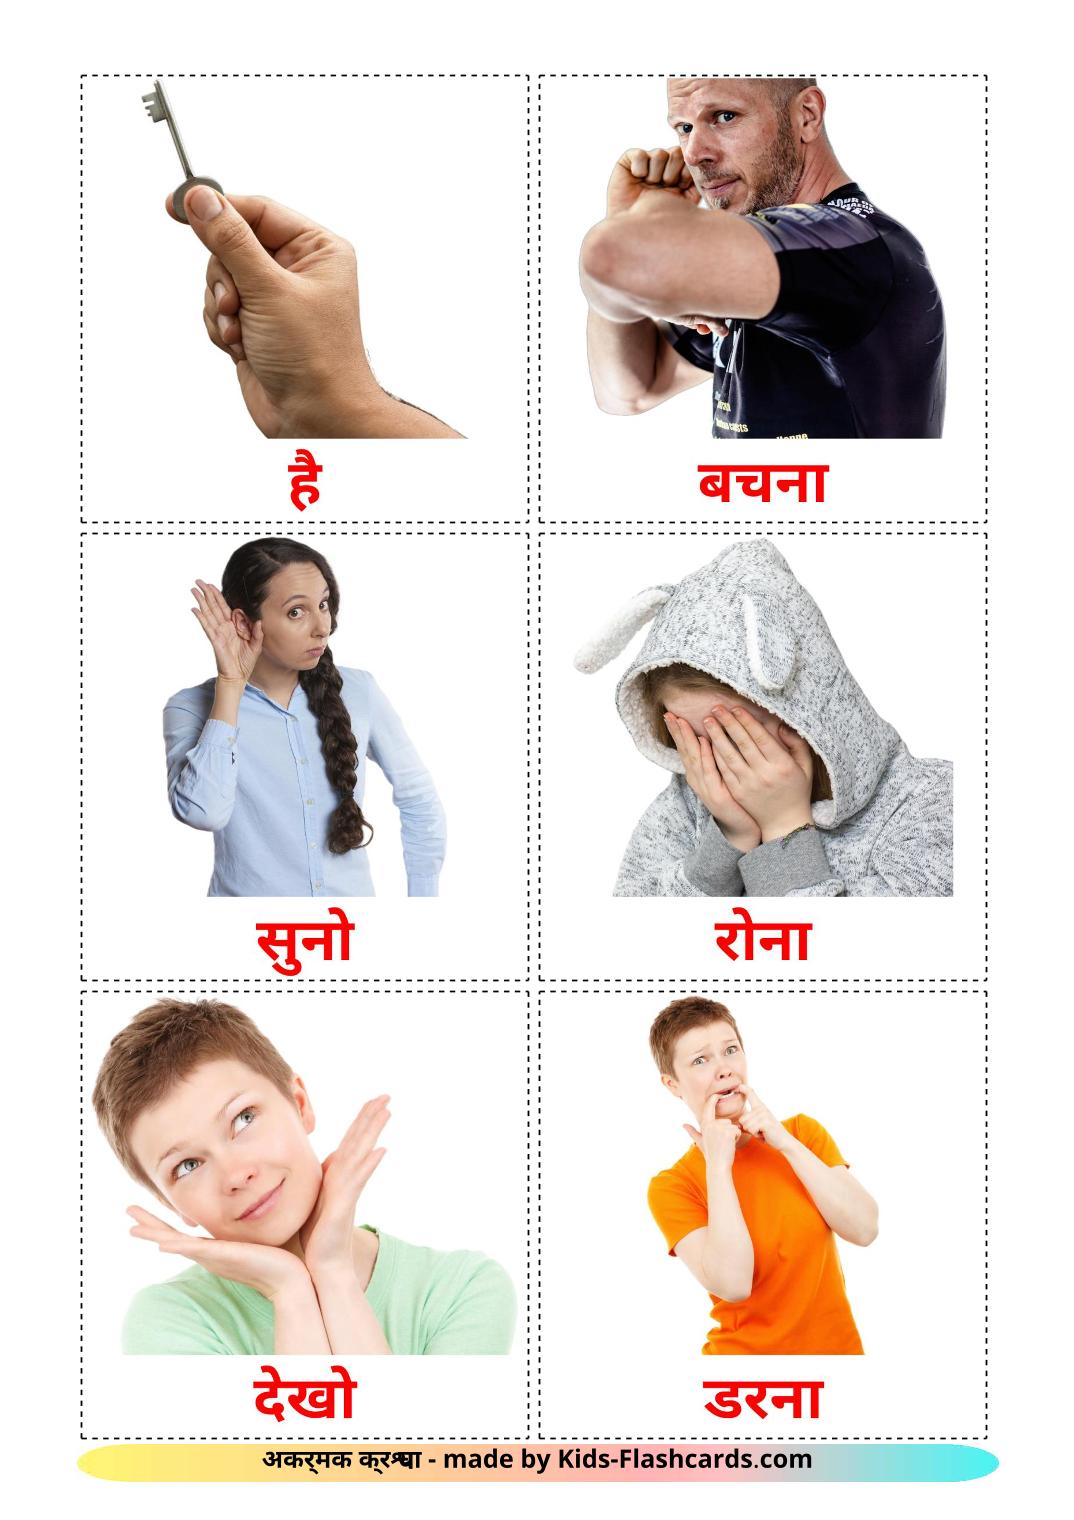 Verbos estatales - 23 fichas de hindi para imprimir gratis 